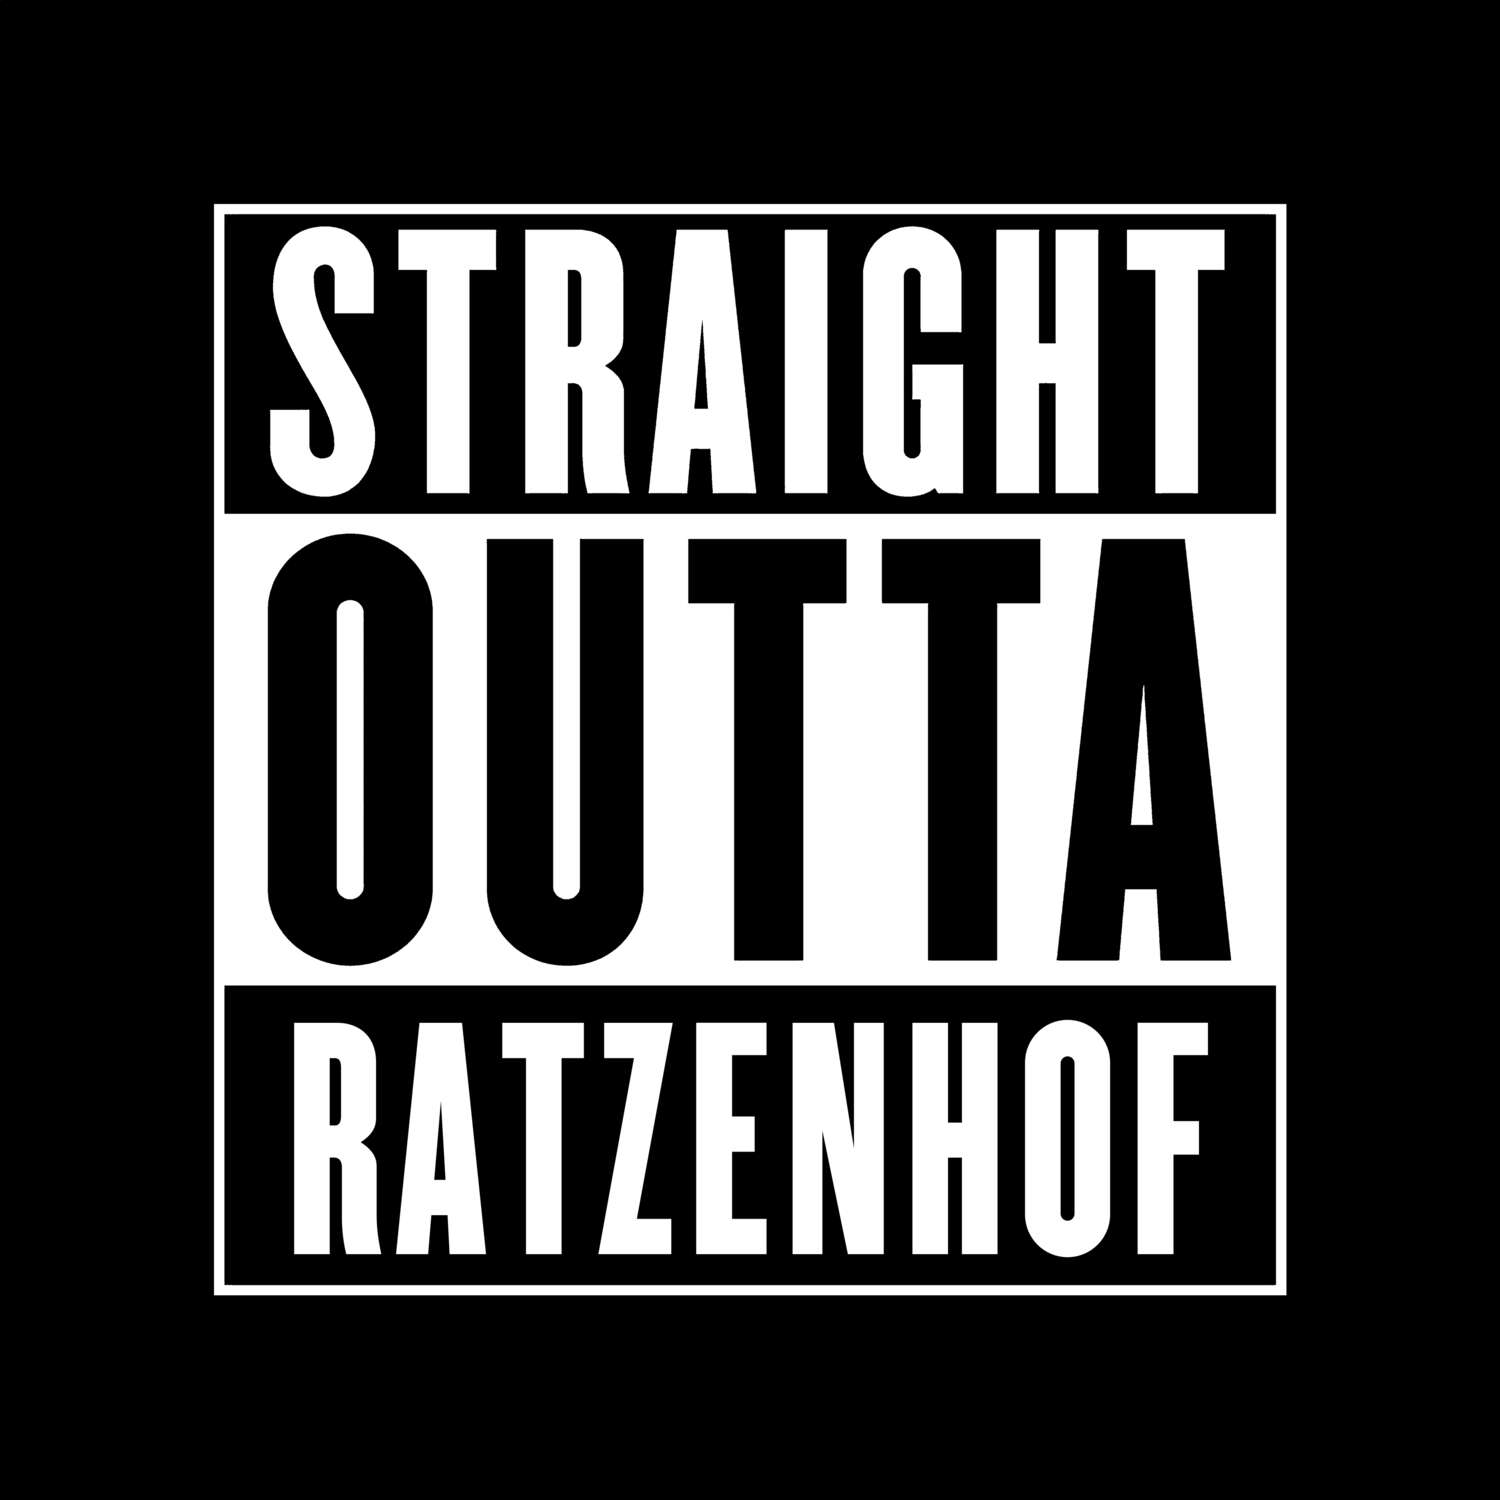 Ratzenhof T-Shirt »Straight Outta«